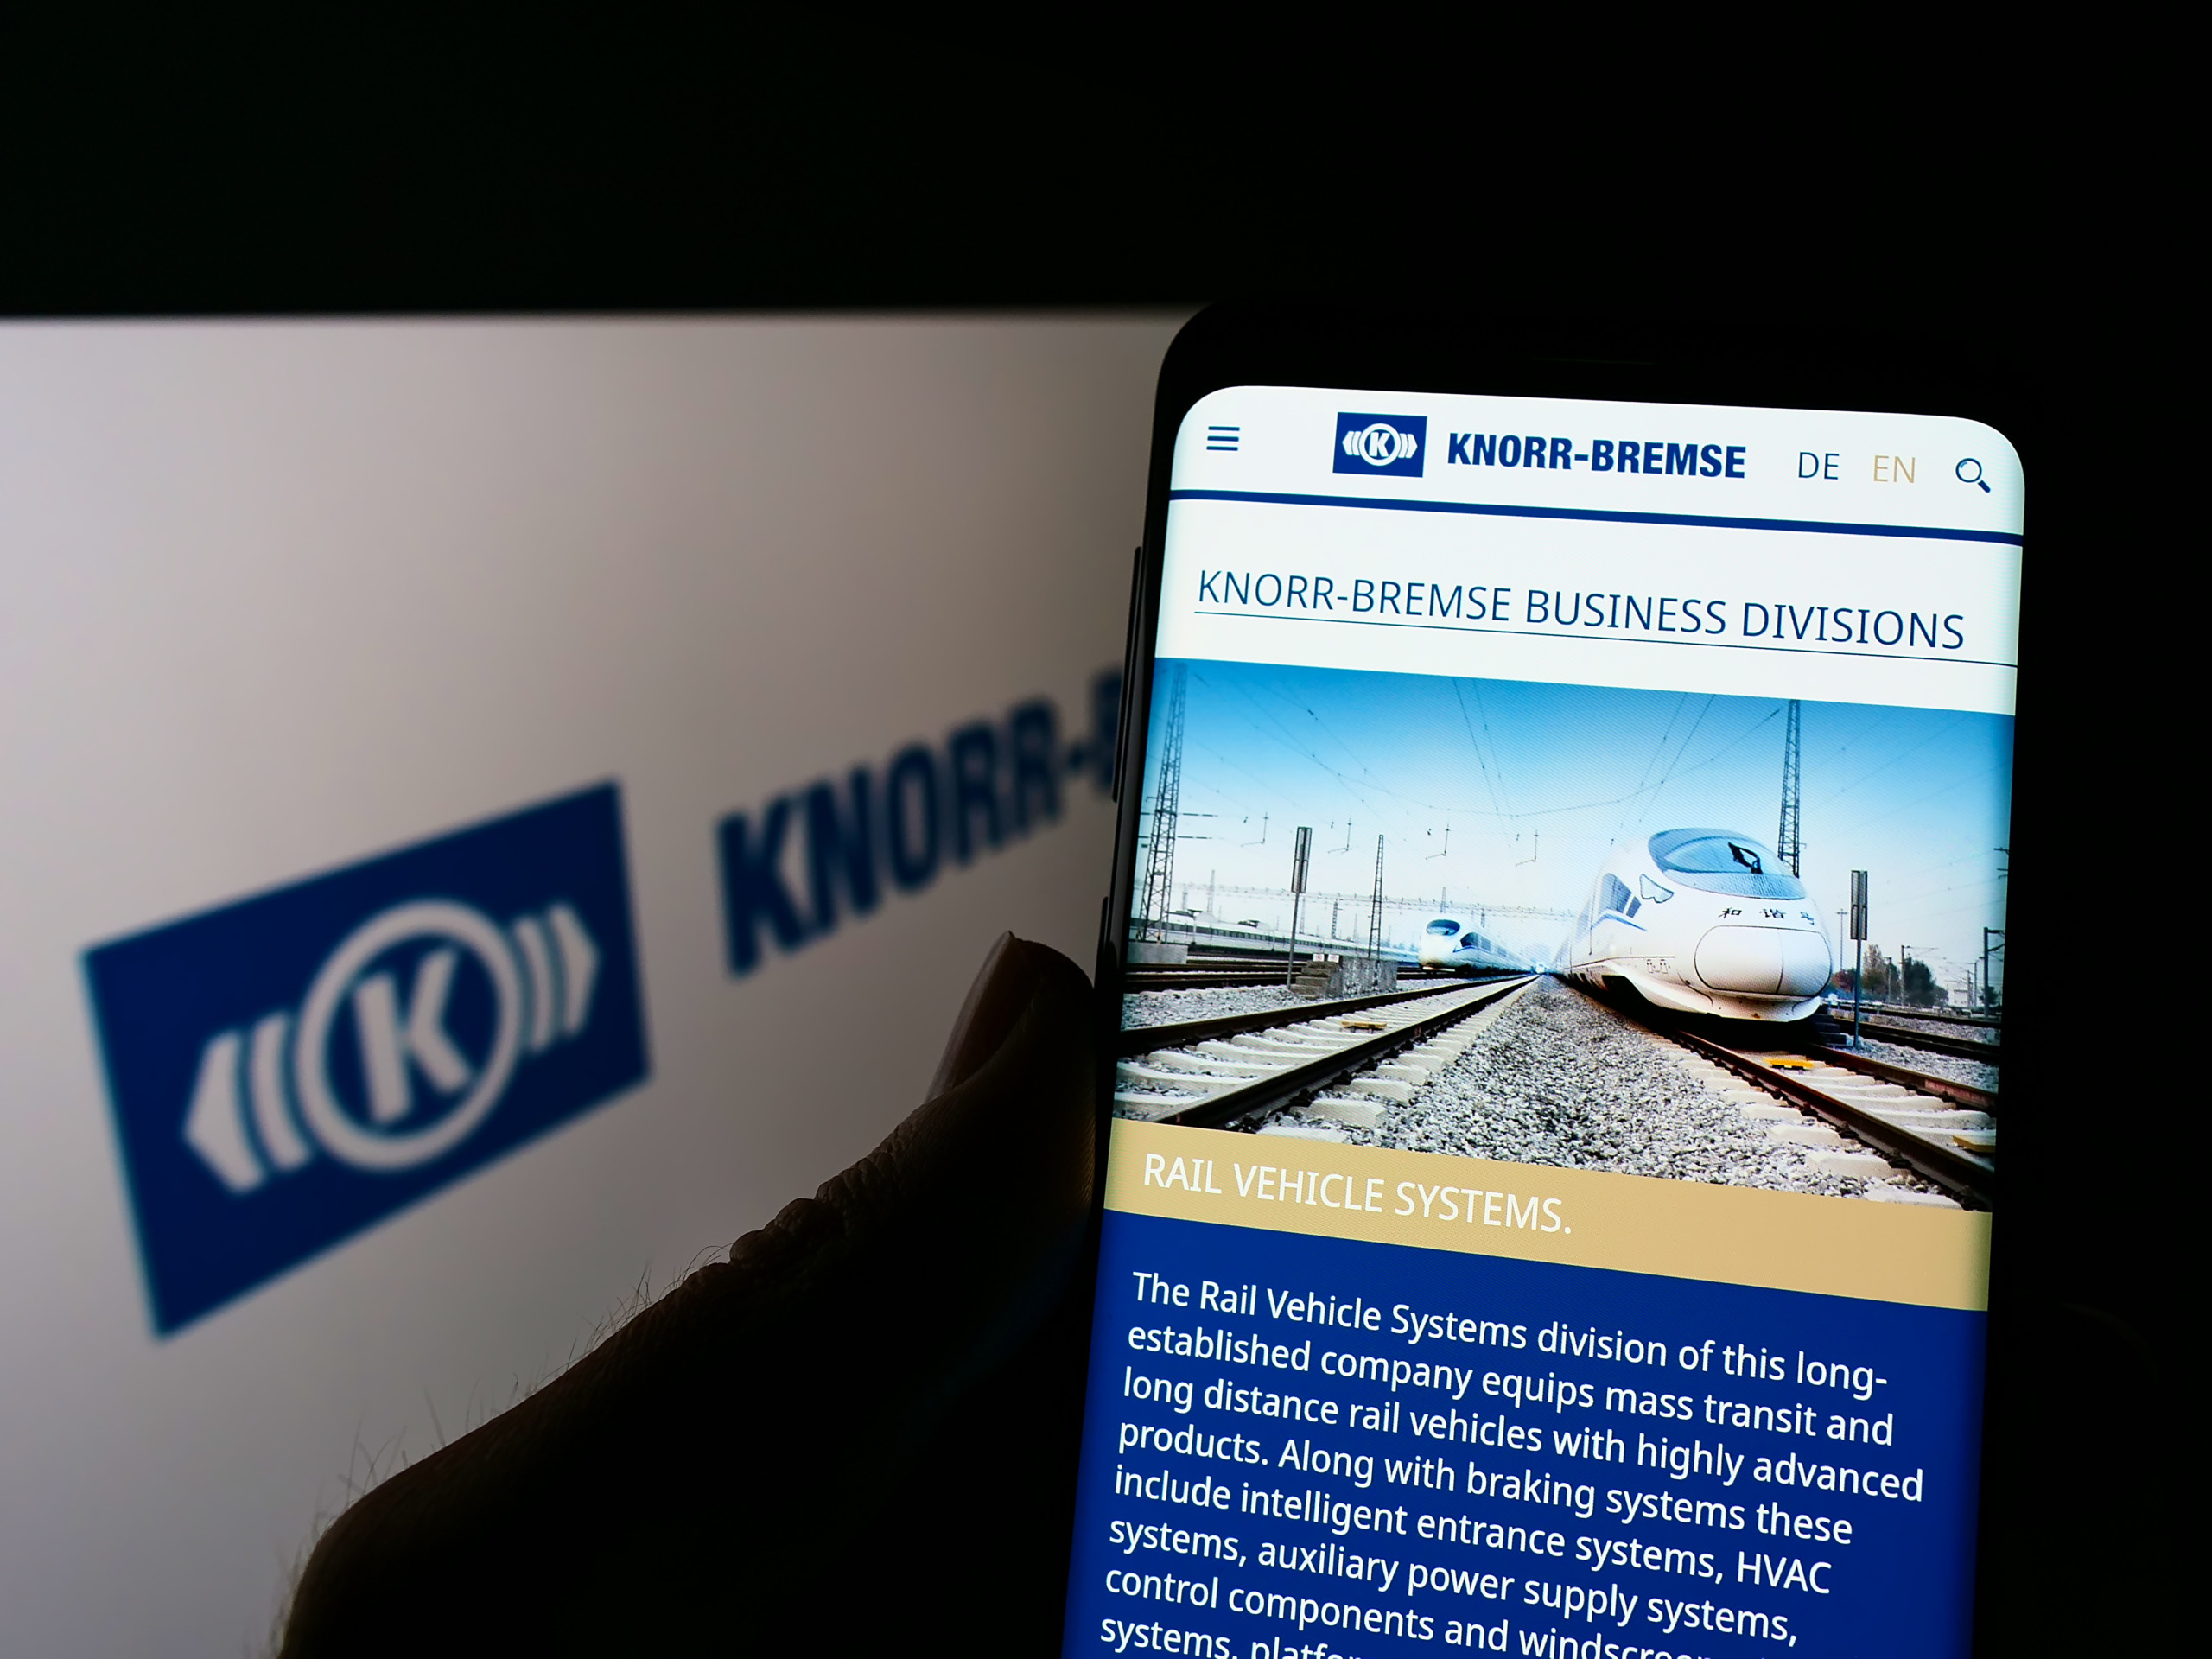 Nebenwerte Research Blog: Knorr-Bremse: Der Marktführer für Bremssysteme wandelt sich zum Systemanbieter!